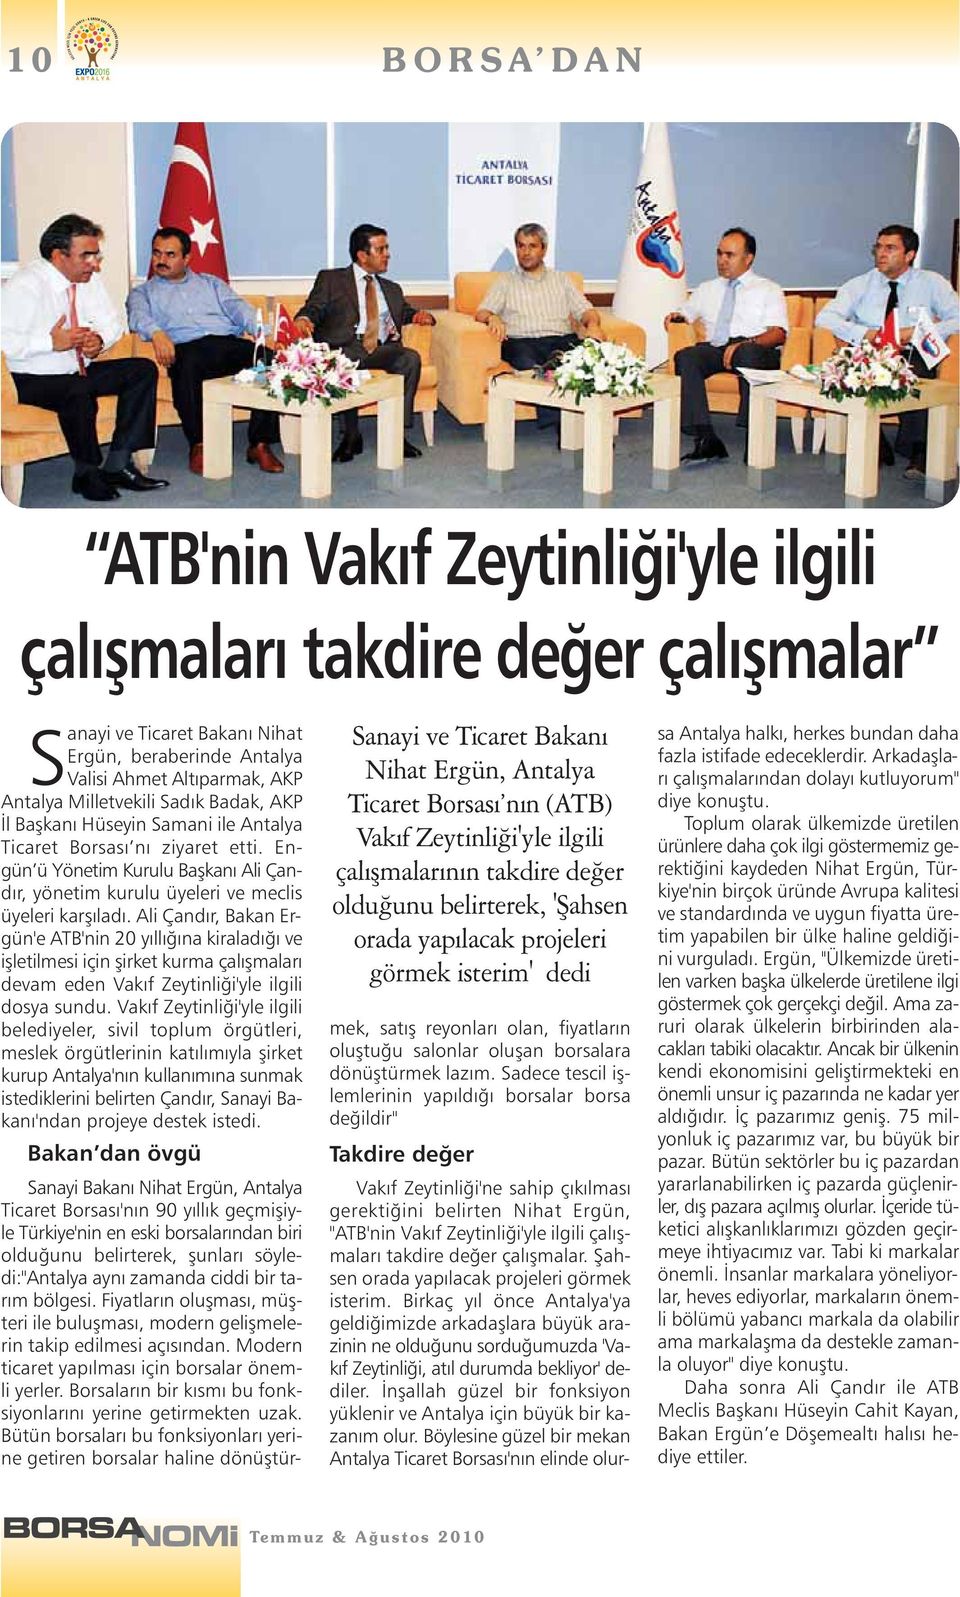 Milletvekili Sadık Badak, AKP İl Başkanı Hüseyin Samani ile Antalya Ticaret Borsası nı ziyaret etti. Engün ü Yönetim Kurulu Başkanı Ali Çandır, yönetim kurulu üyeleri ve meclis üyeleri karşıladı.